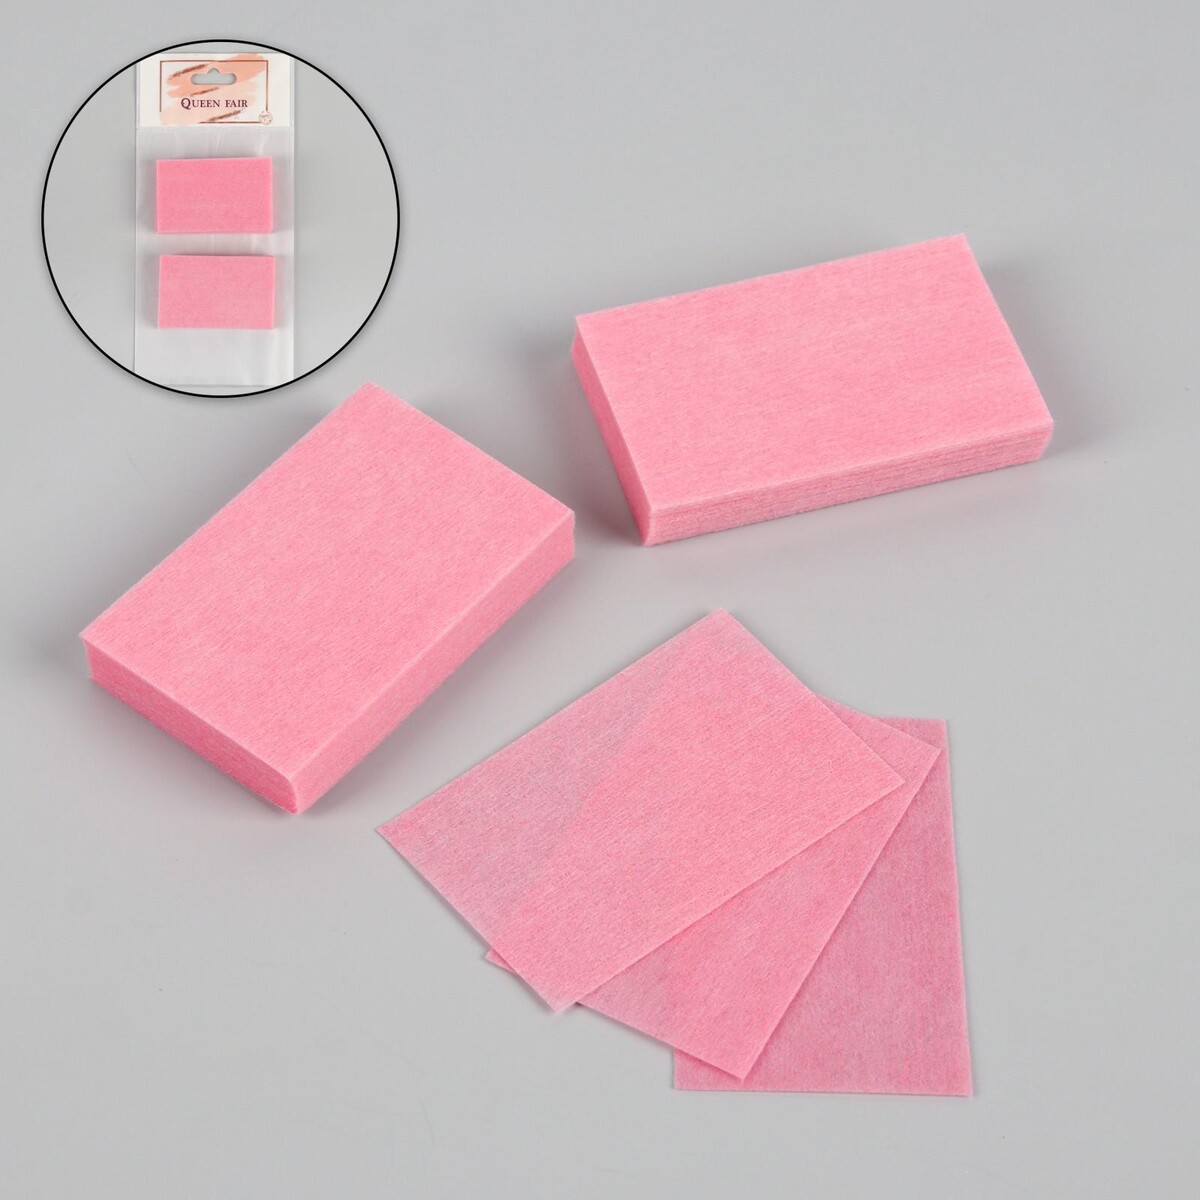 Салфетки для маникюра, безворсовые, 50 шт, 6 × 4 см, цвет розовый салфетки для маникюра безворсовые 50 шт 6 × 4 см розовый